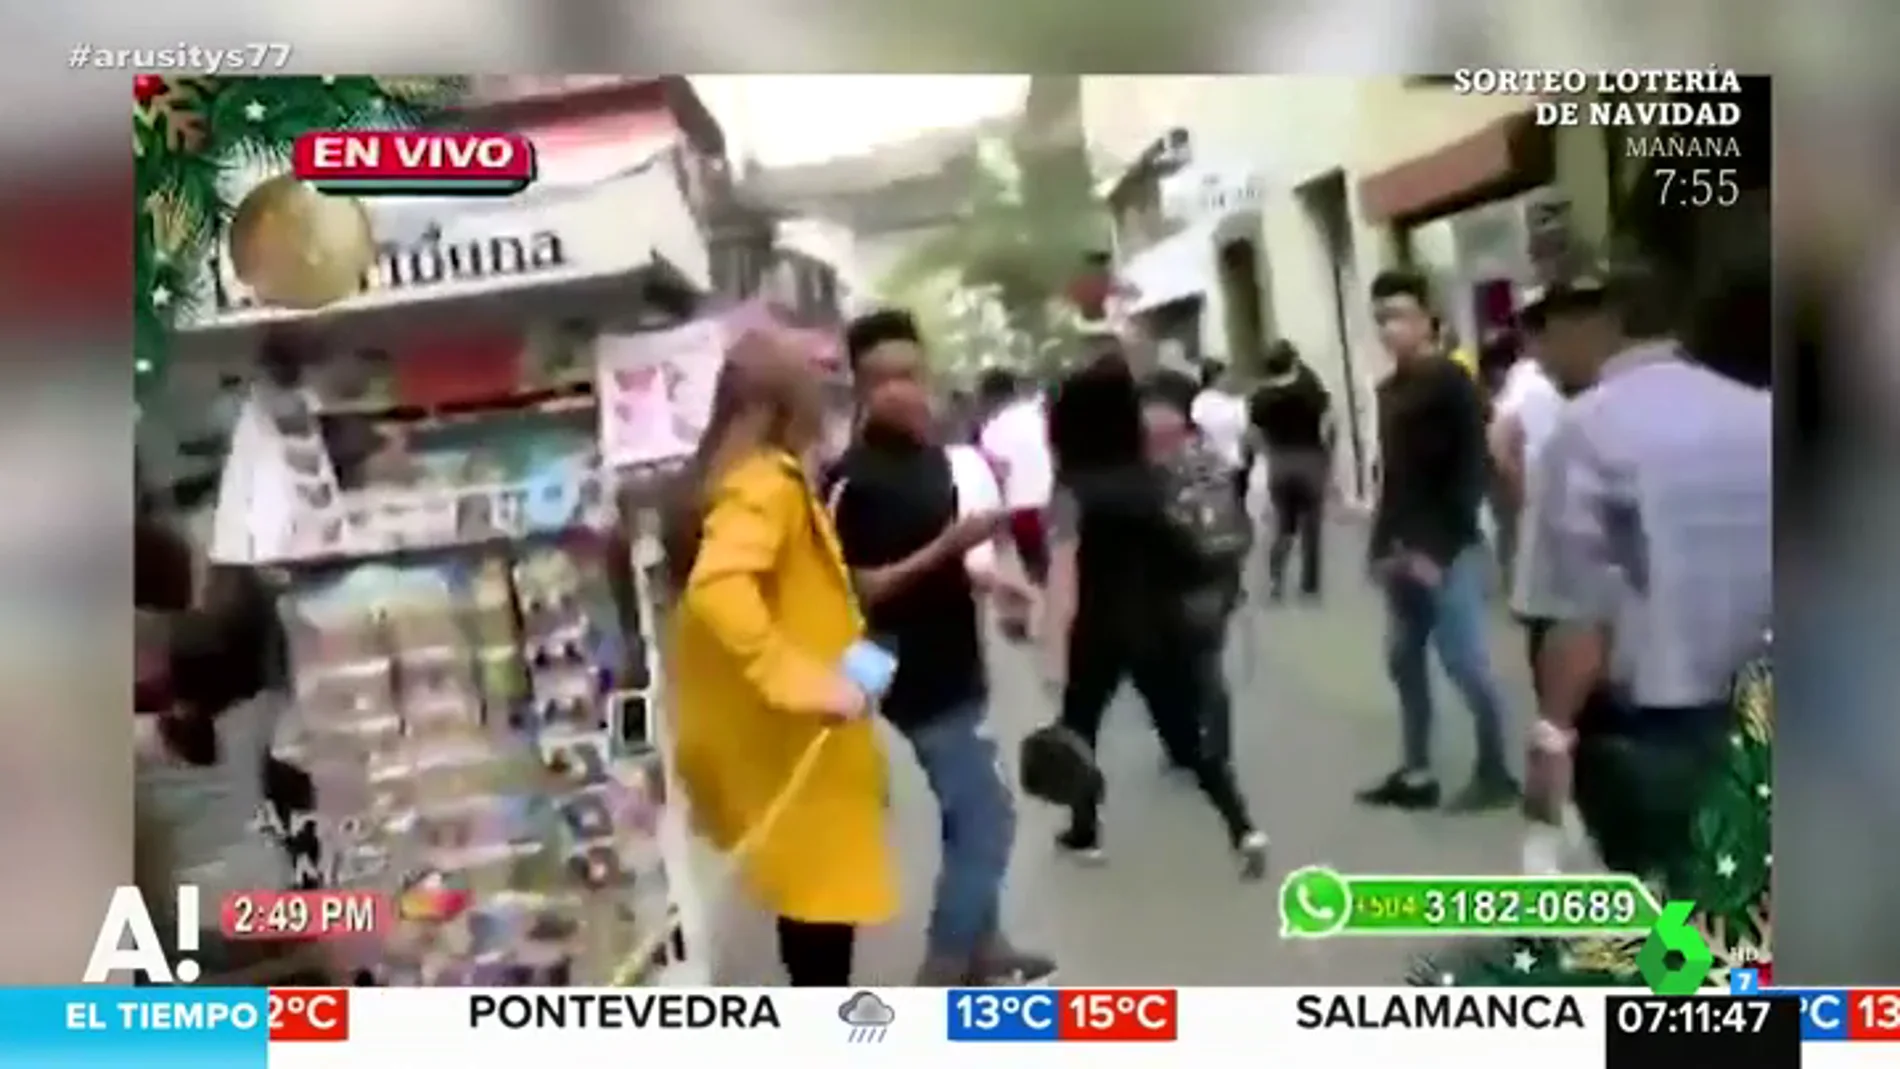 El momento en el que un hombre roba el móvil a una reportera en pleno directo